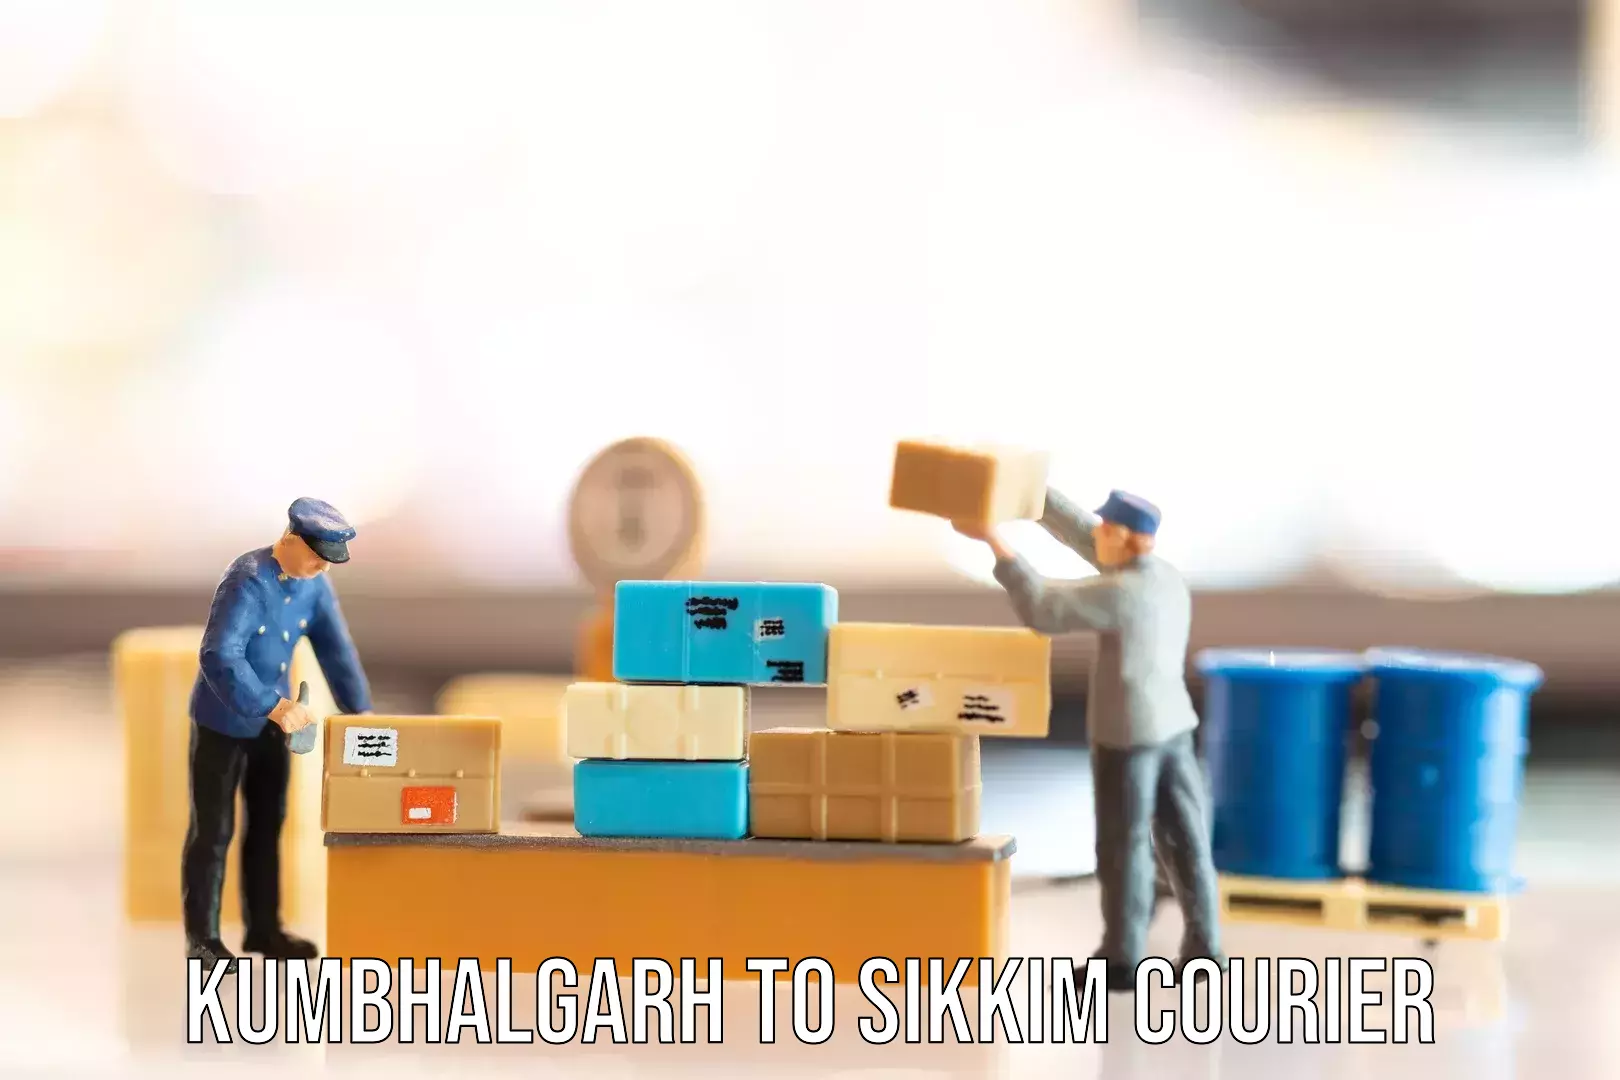 Luggage shipment tracking Kumbhalgarh to Sikkim